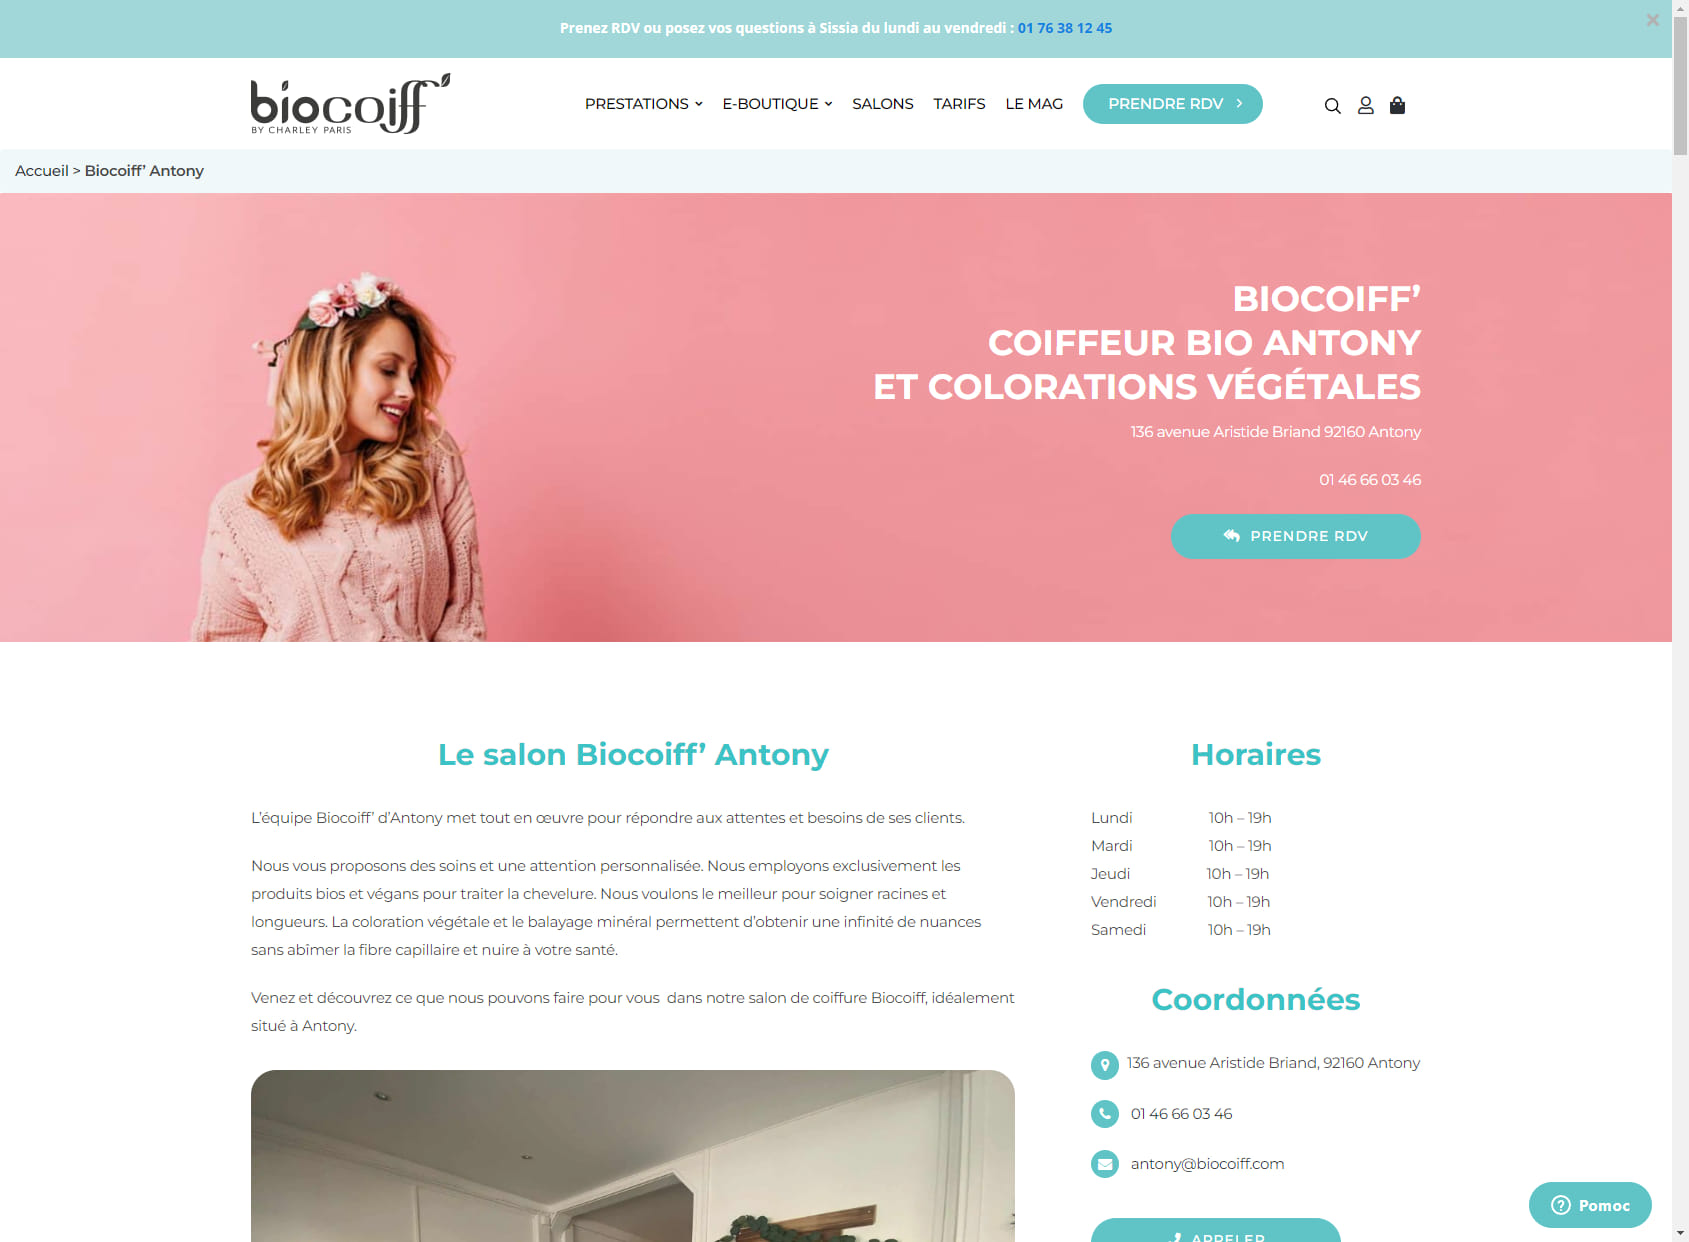 Biocoiff' - Coiffeur Bio Antony et coloration végétale